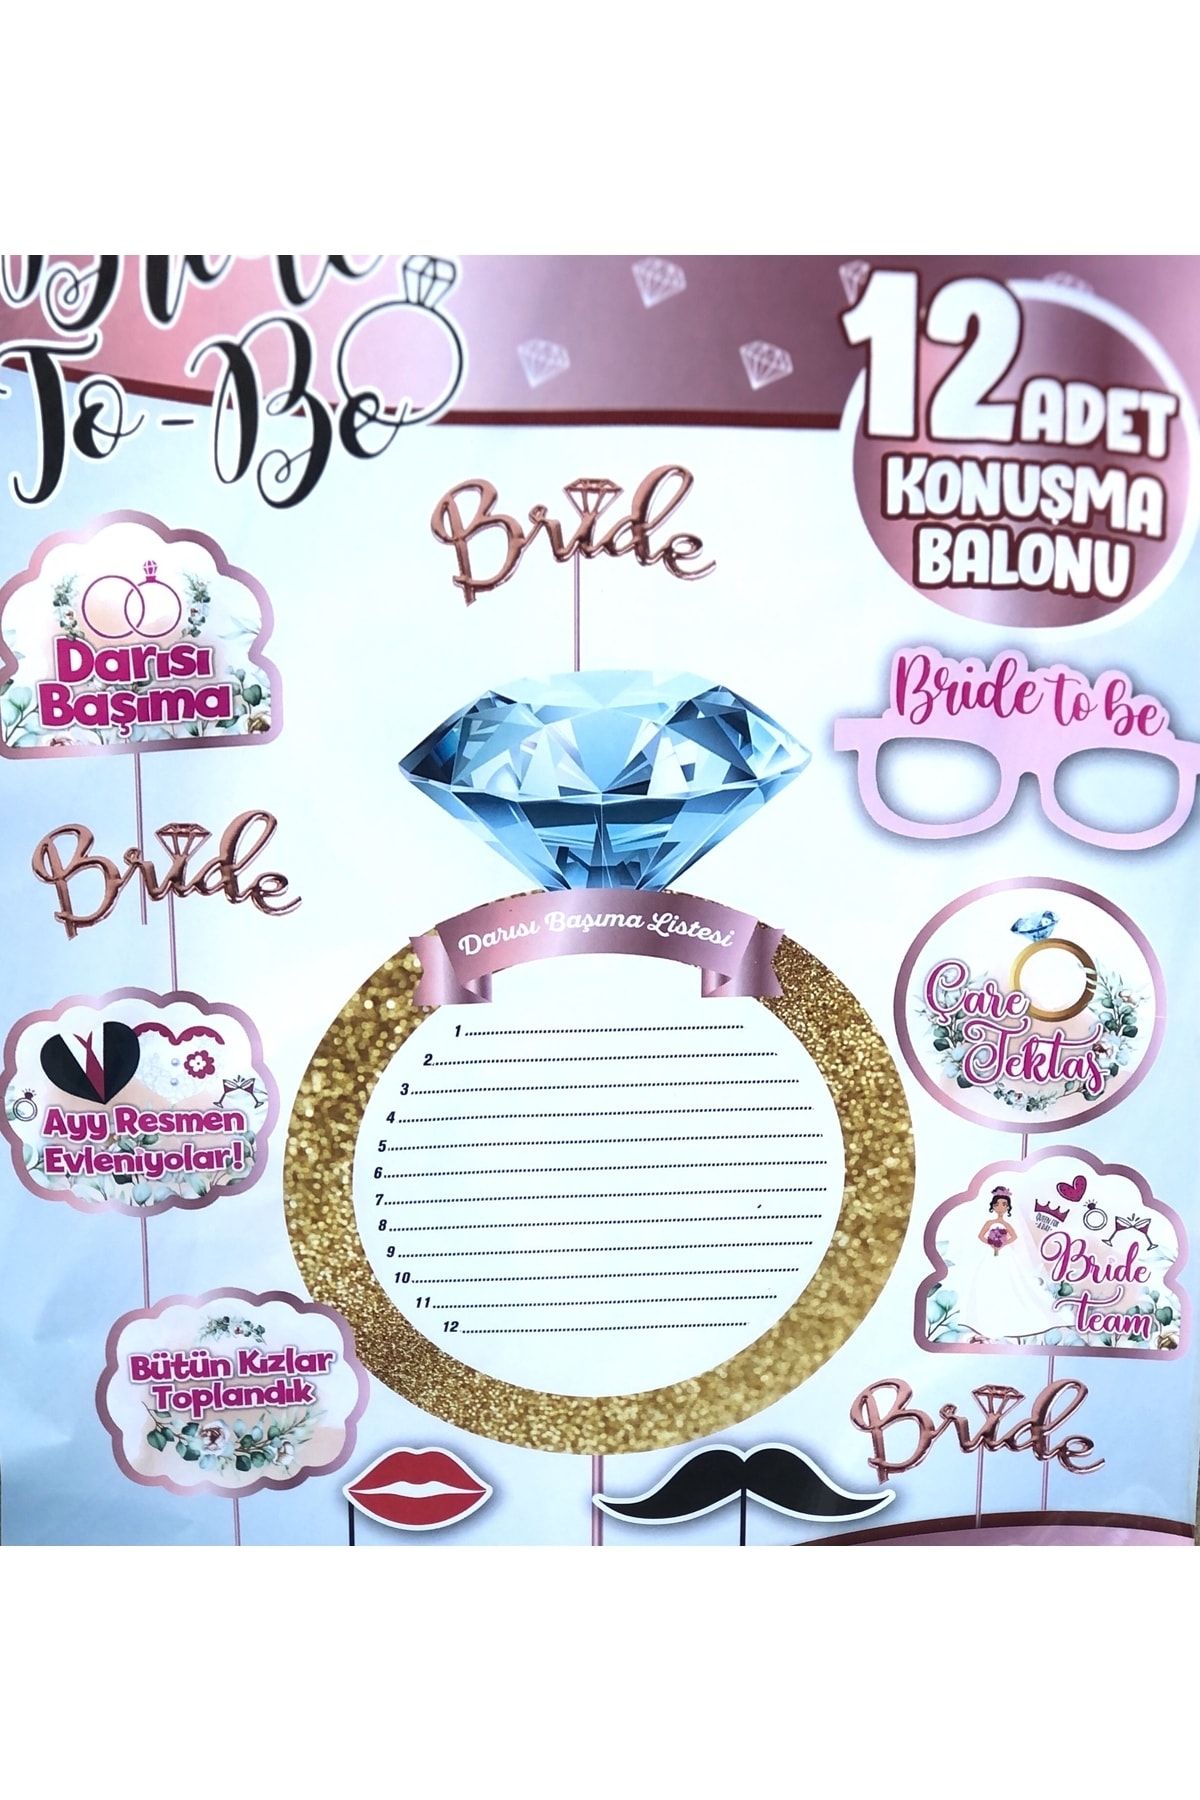 Huzur Party Store Bride To Be Temalı 12 Adet Konuşma Balonu Darısı Başıma Listesi Bekarlığa Veda Partisi Süs Seti